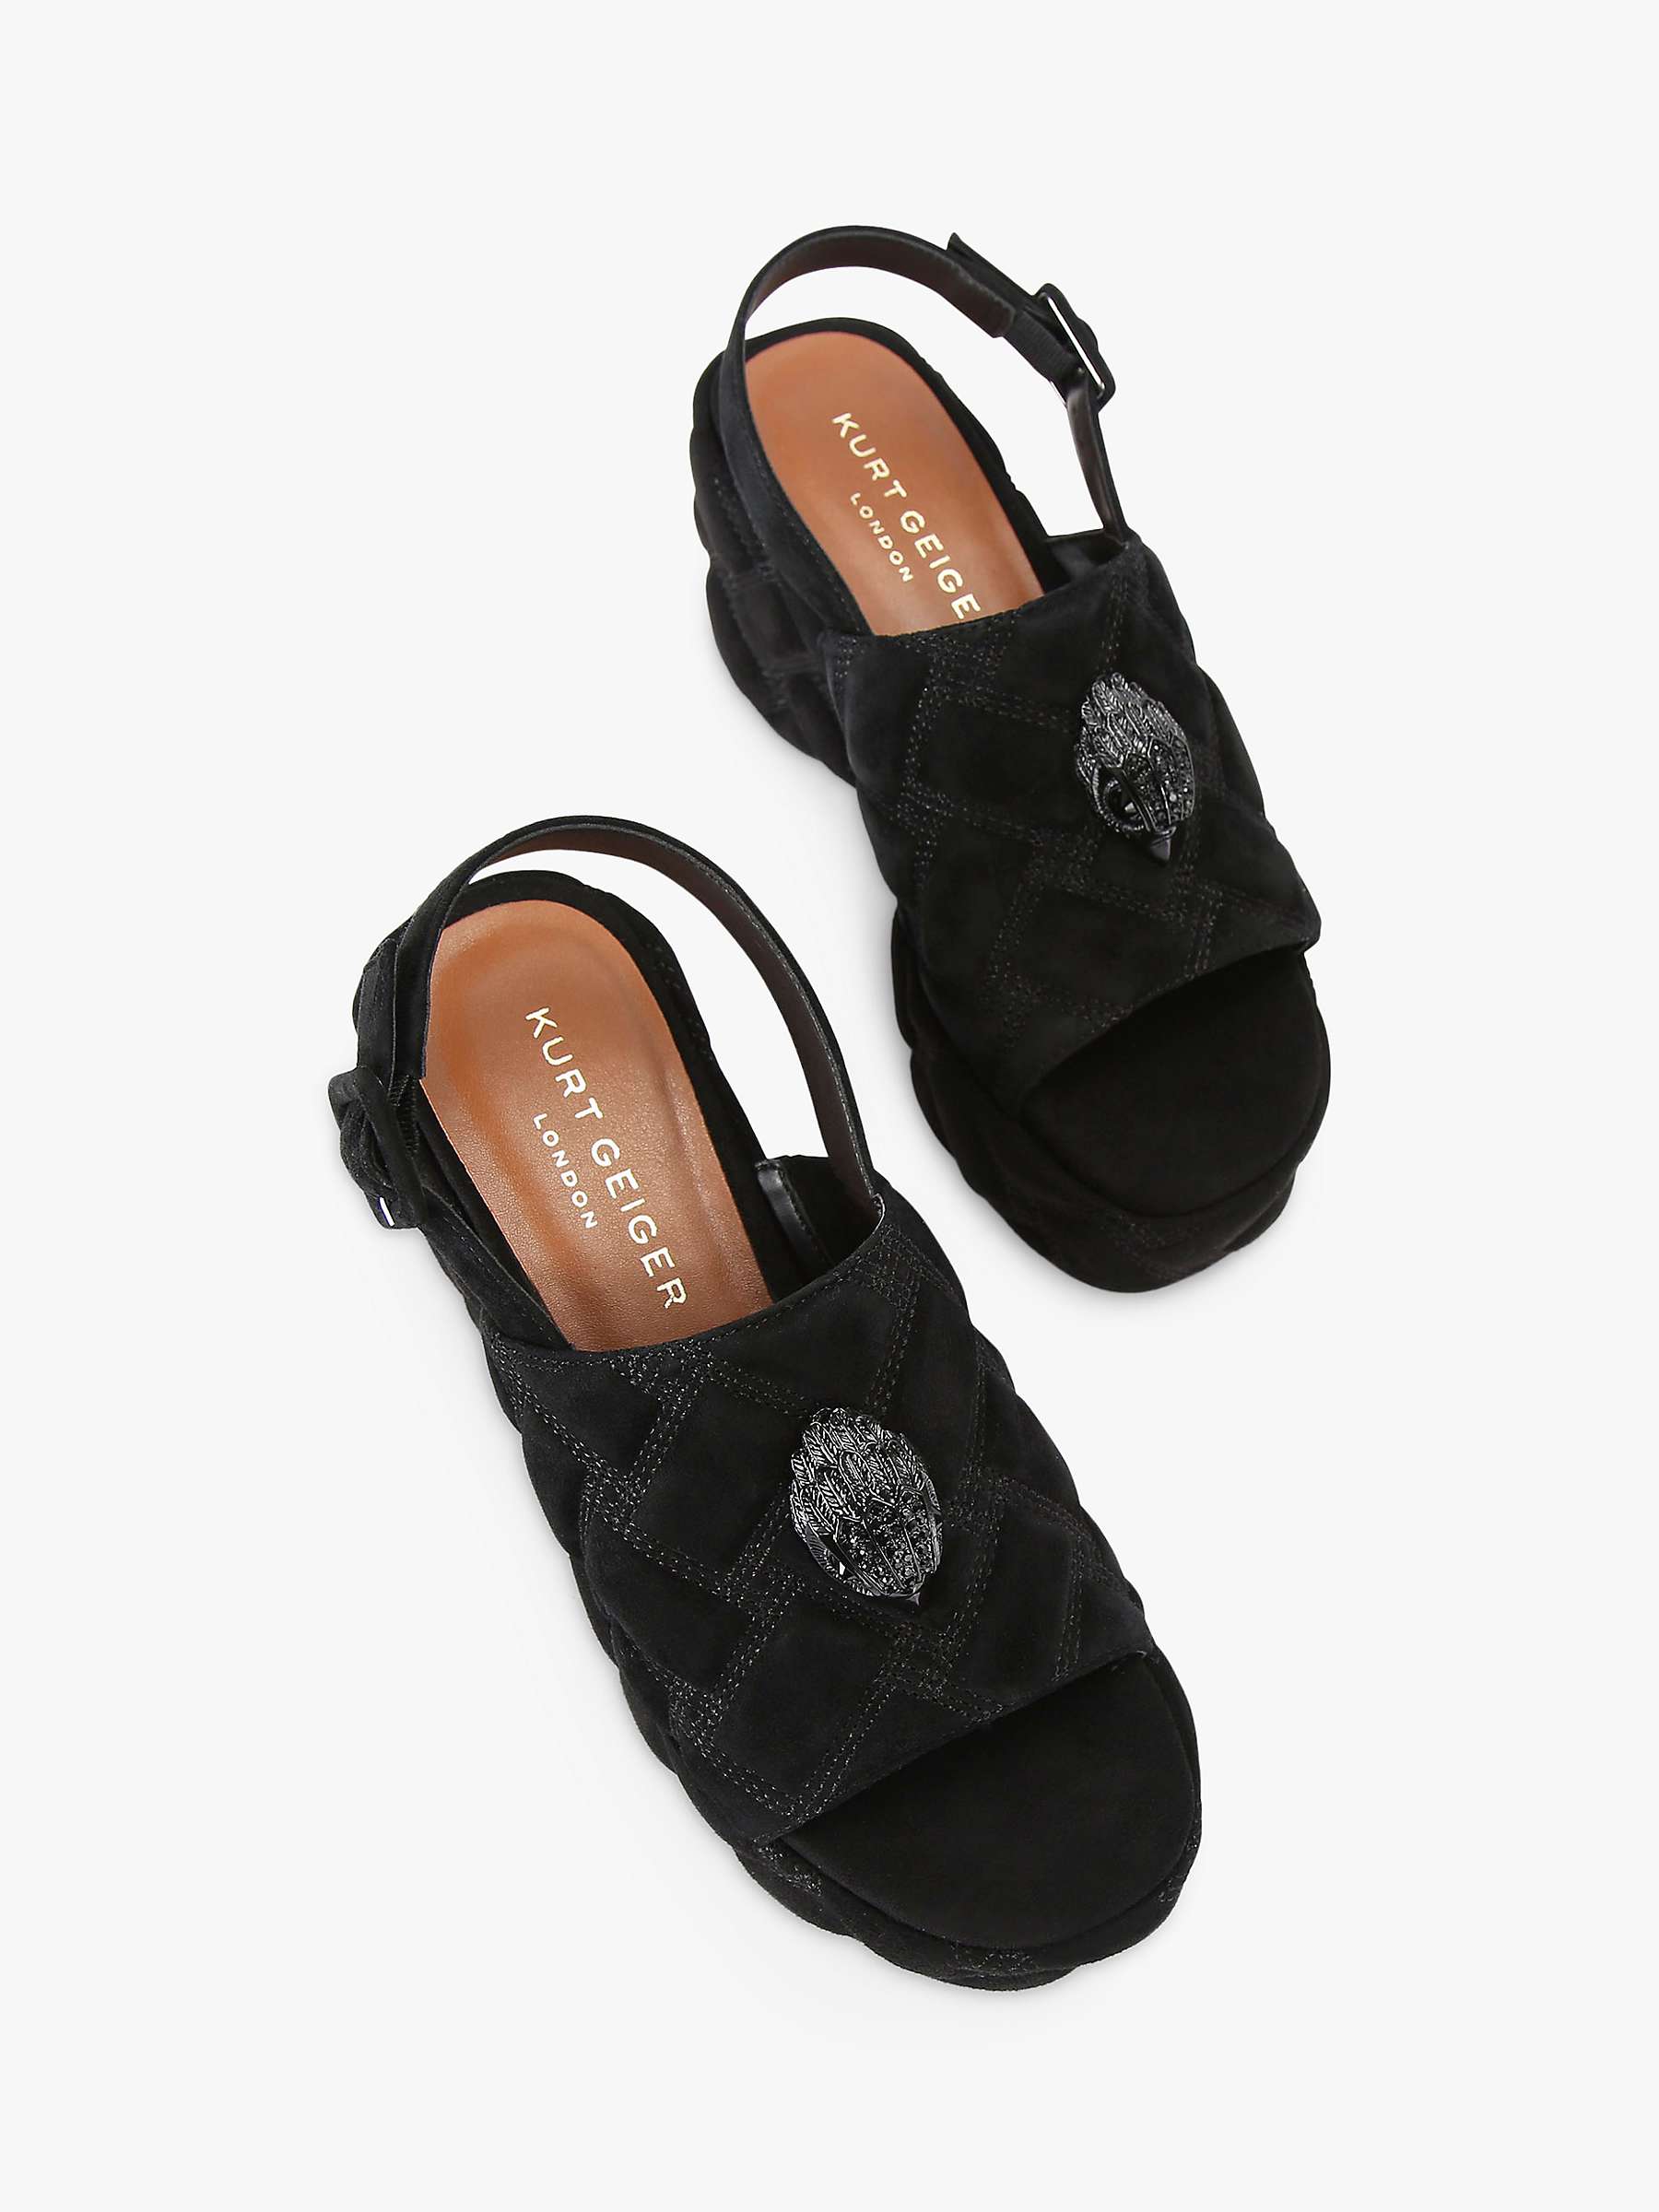 Buy Kurt Geiger London Kensington Suede Wedge Heel Sandals, Black Online at johnlewis.com